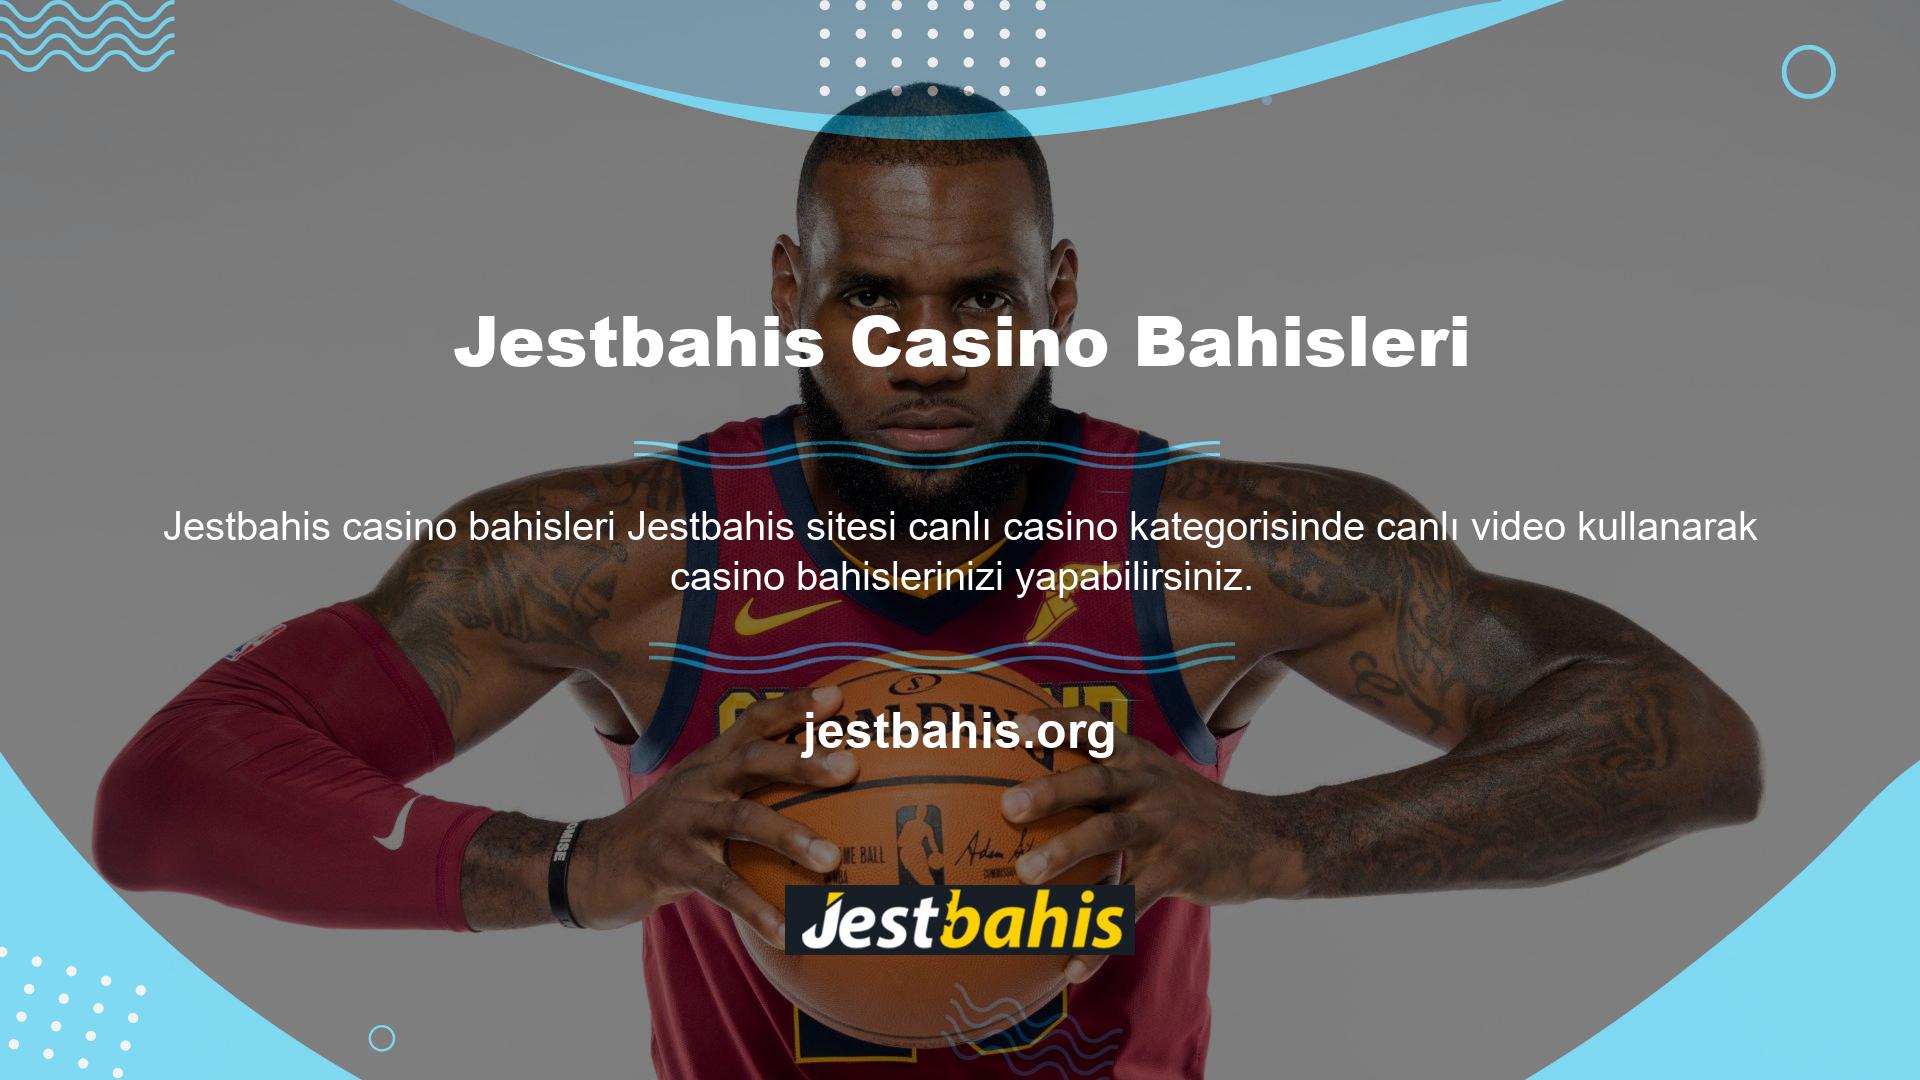 Jestbahis ana sayfasına giriş yaptığınızda kategorilerden “Canlı Casino” seçeneğini seçerek canlı maçları görüntüleyebilirsiniz